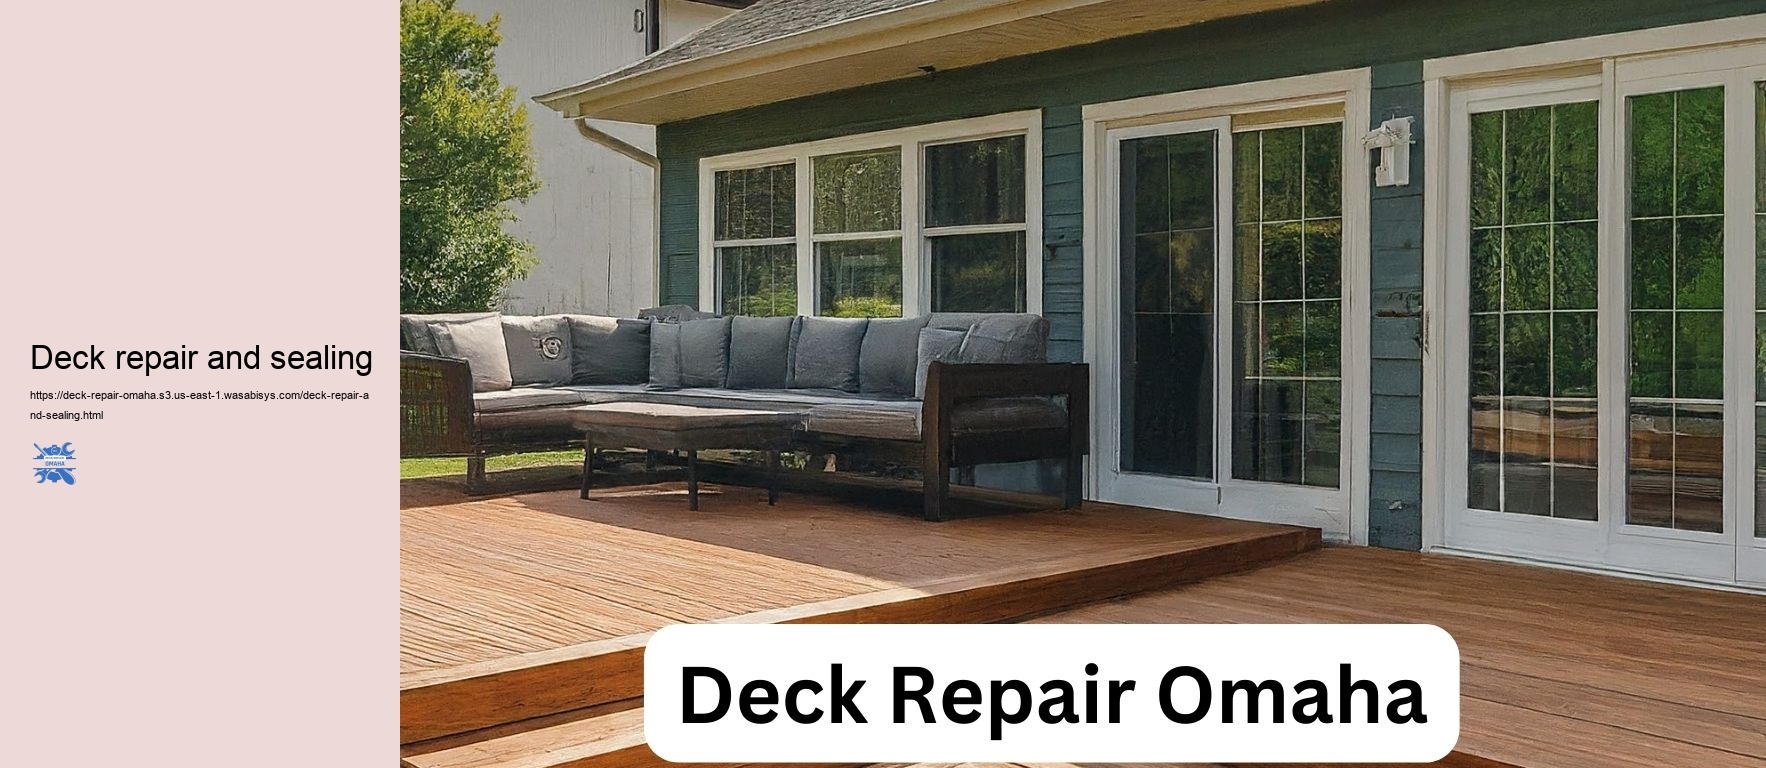 Deck repair and sealing